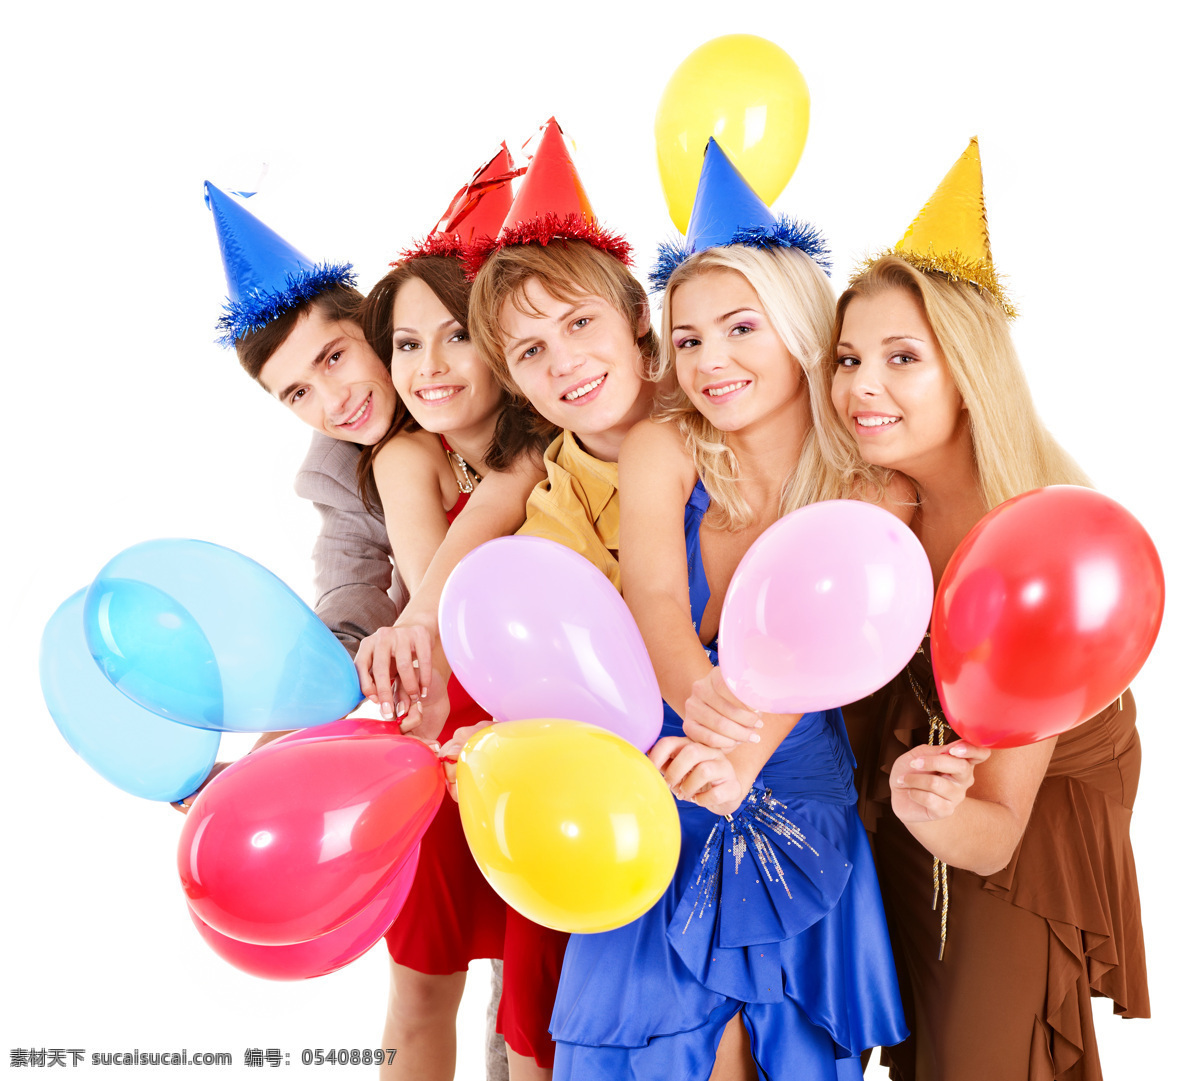 五 外国 男女 庆祝 派对 生日派对 人物 外国男人 外国女人 五个人 喜庆 气球 彩色气球 戴帽子开心 活动 拿着 高清图片 生活人物 人物图片